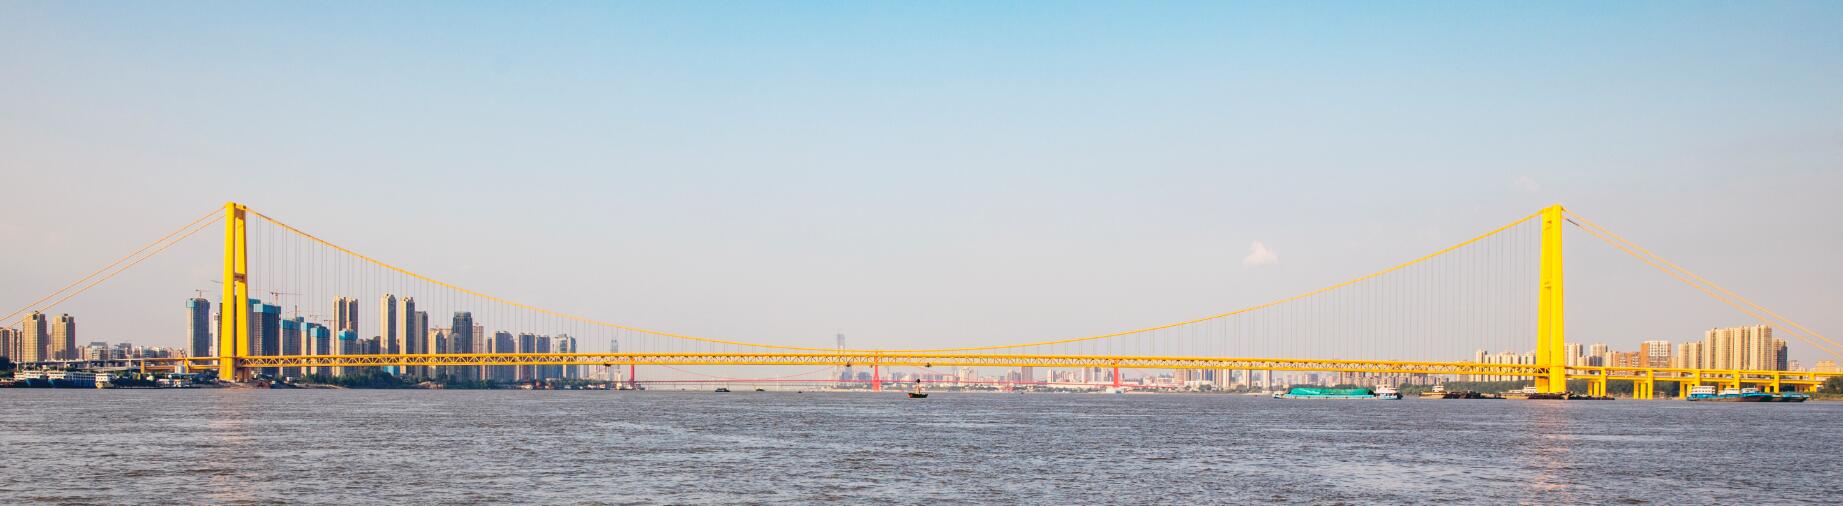 武漢楊泗港長江大橋為世界最大跨度雙層懸索橋(中鐵大橋院供圖)